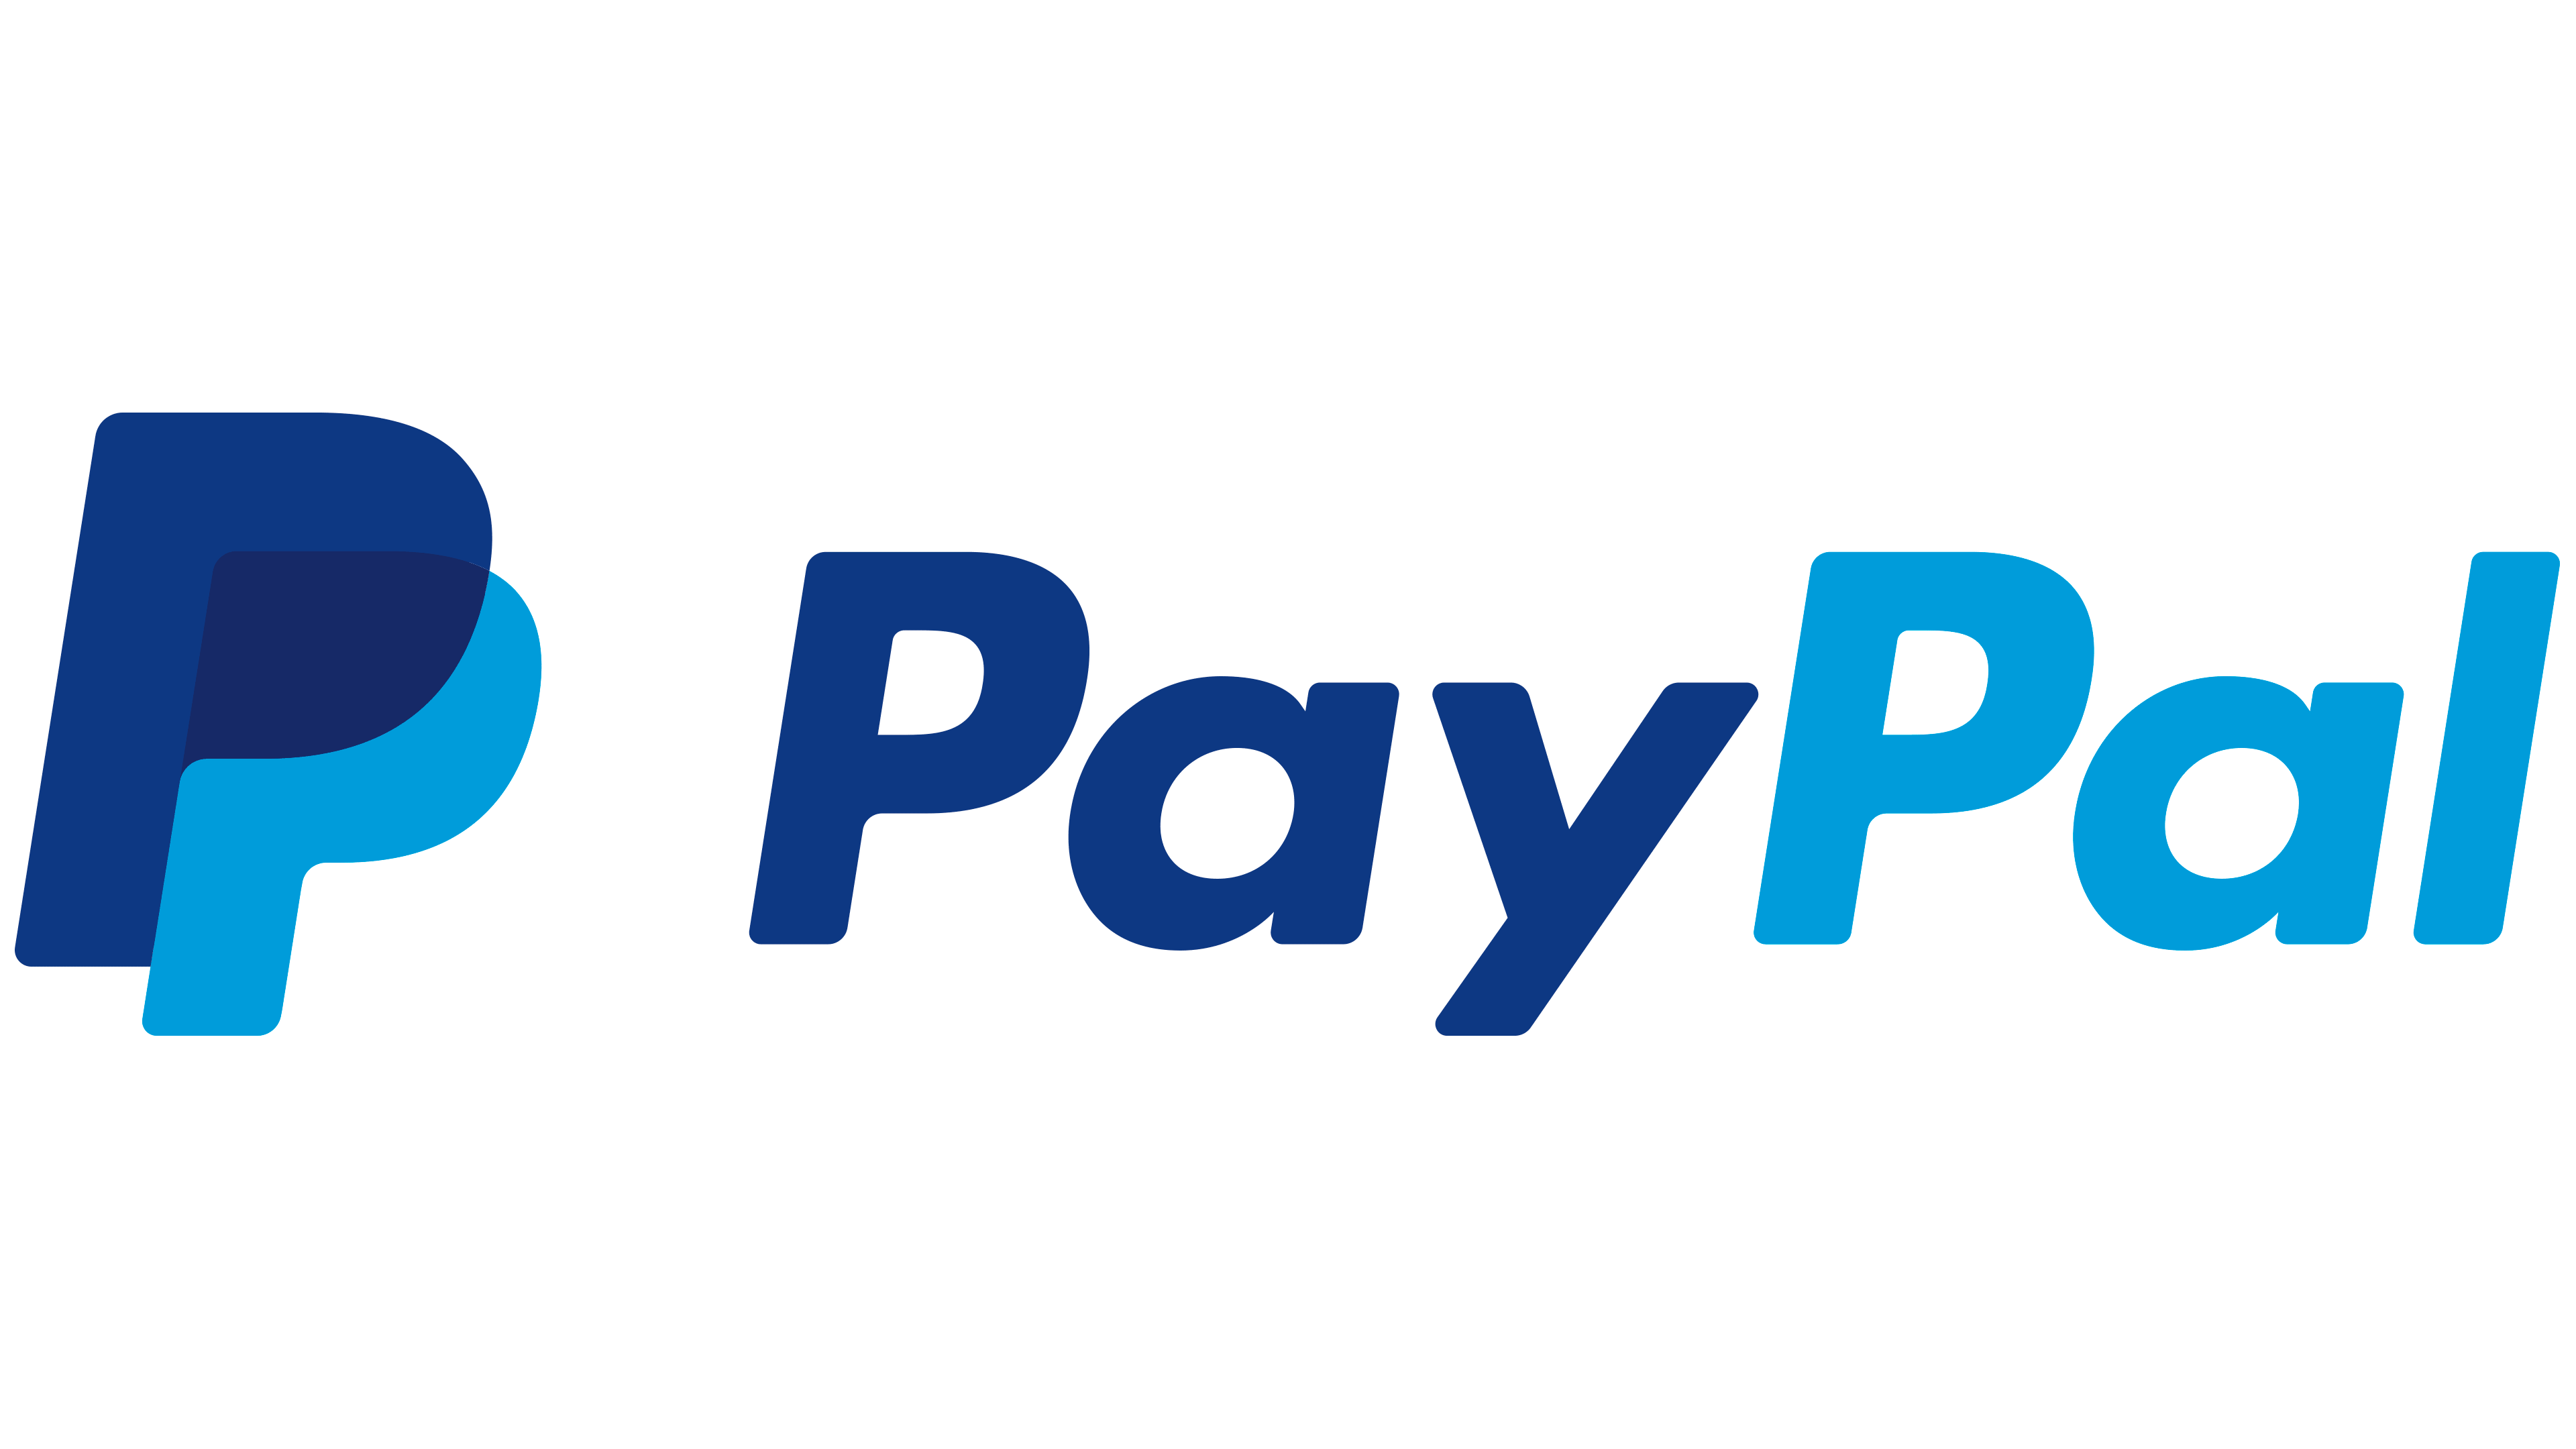 PayPal-Logo Deense styledeense design item, deense stylen, stylen